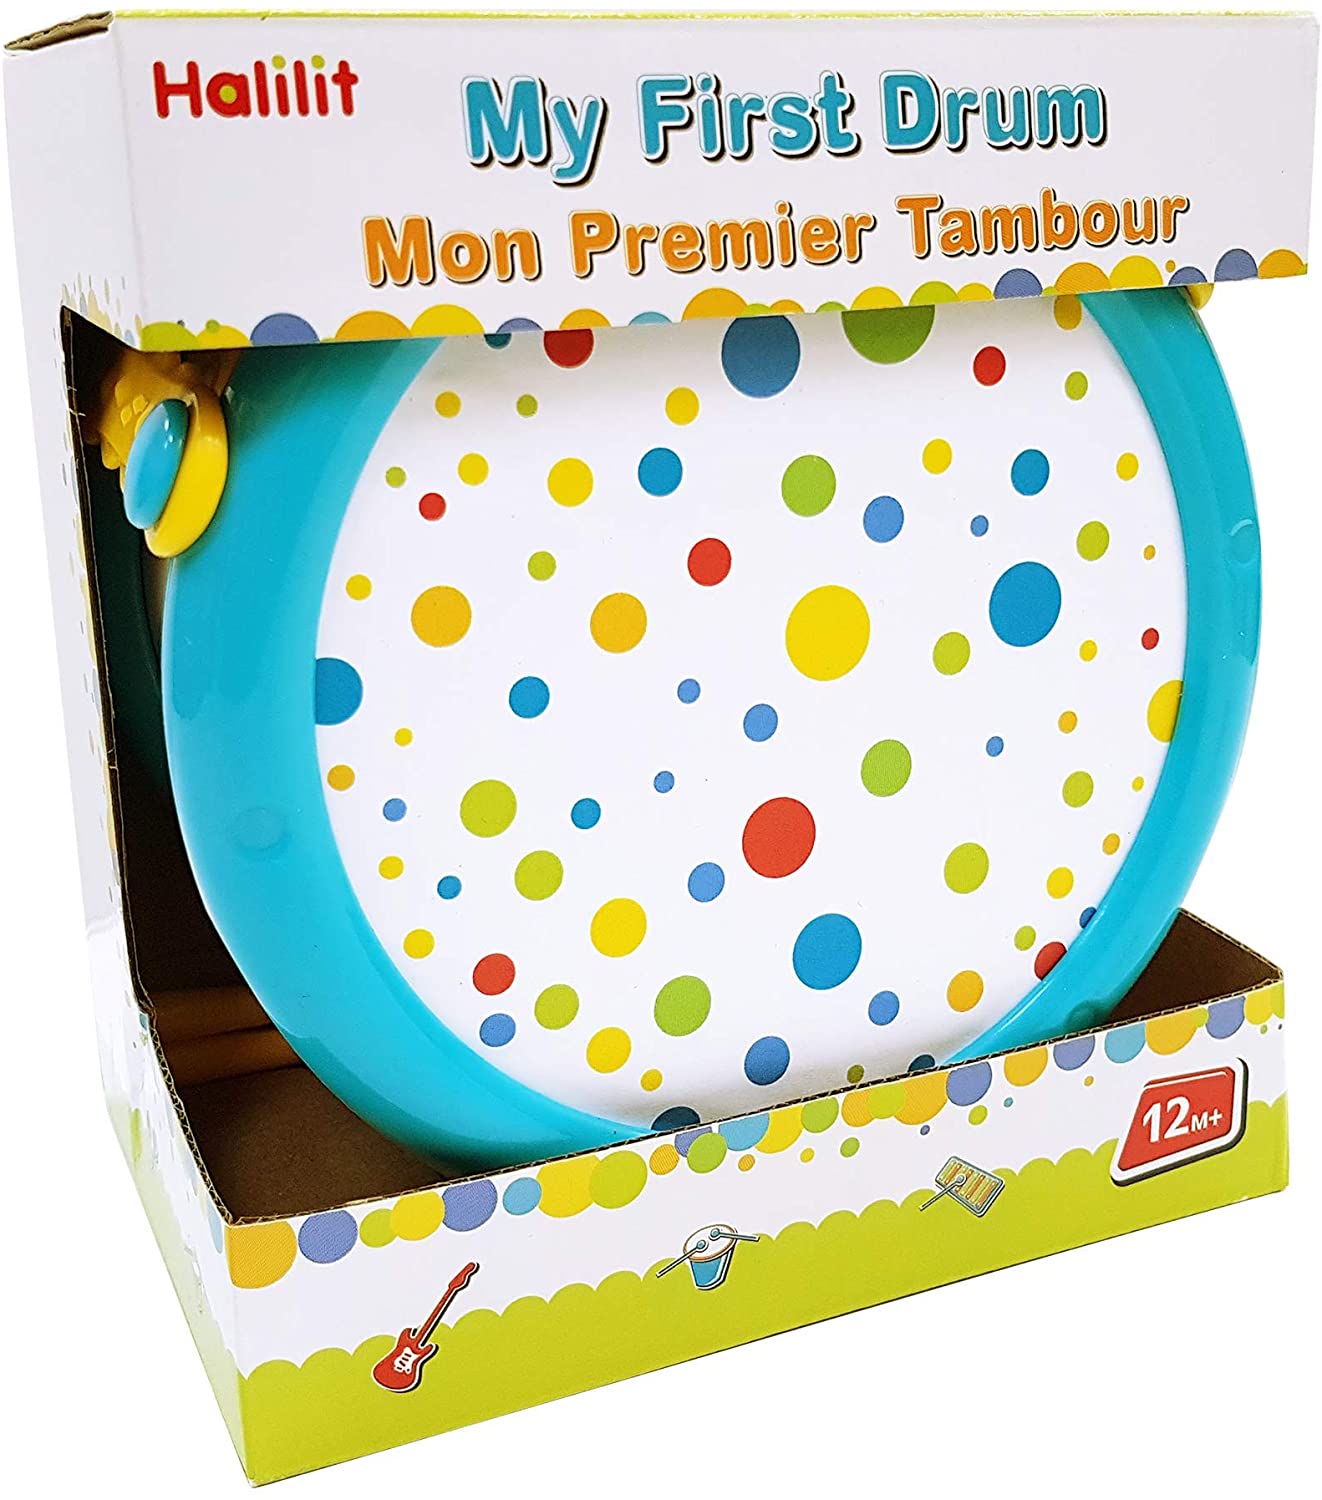 My First Drum